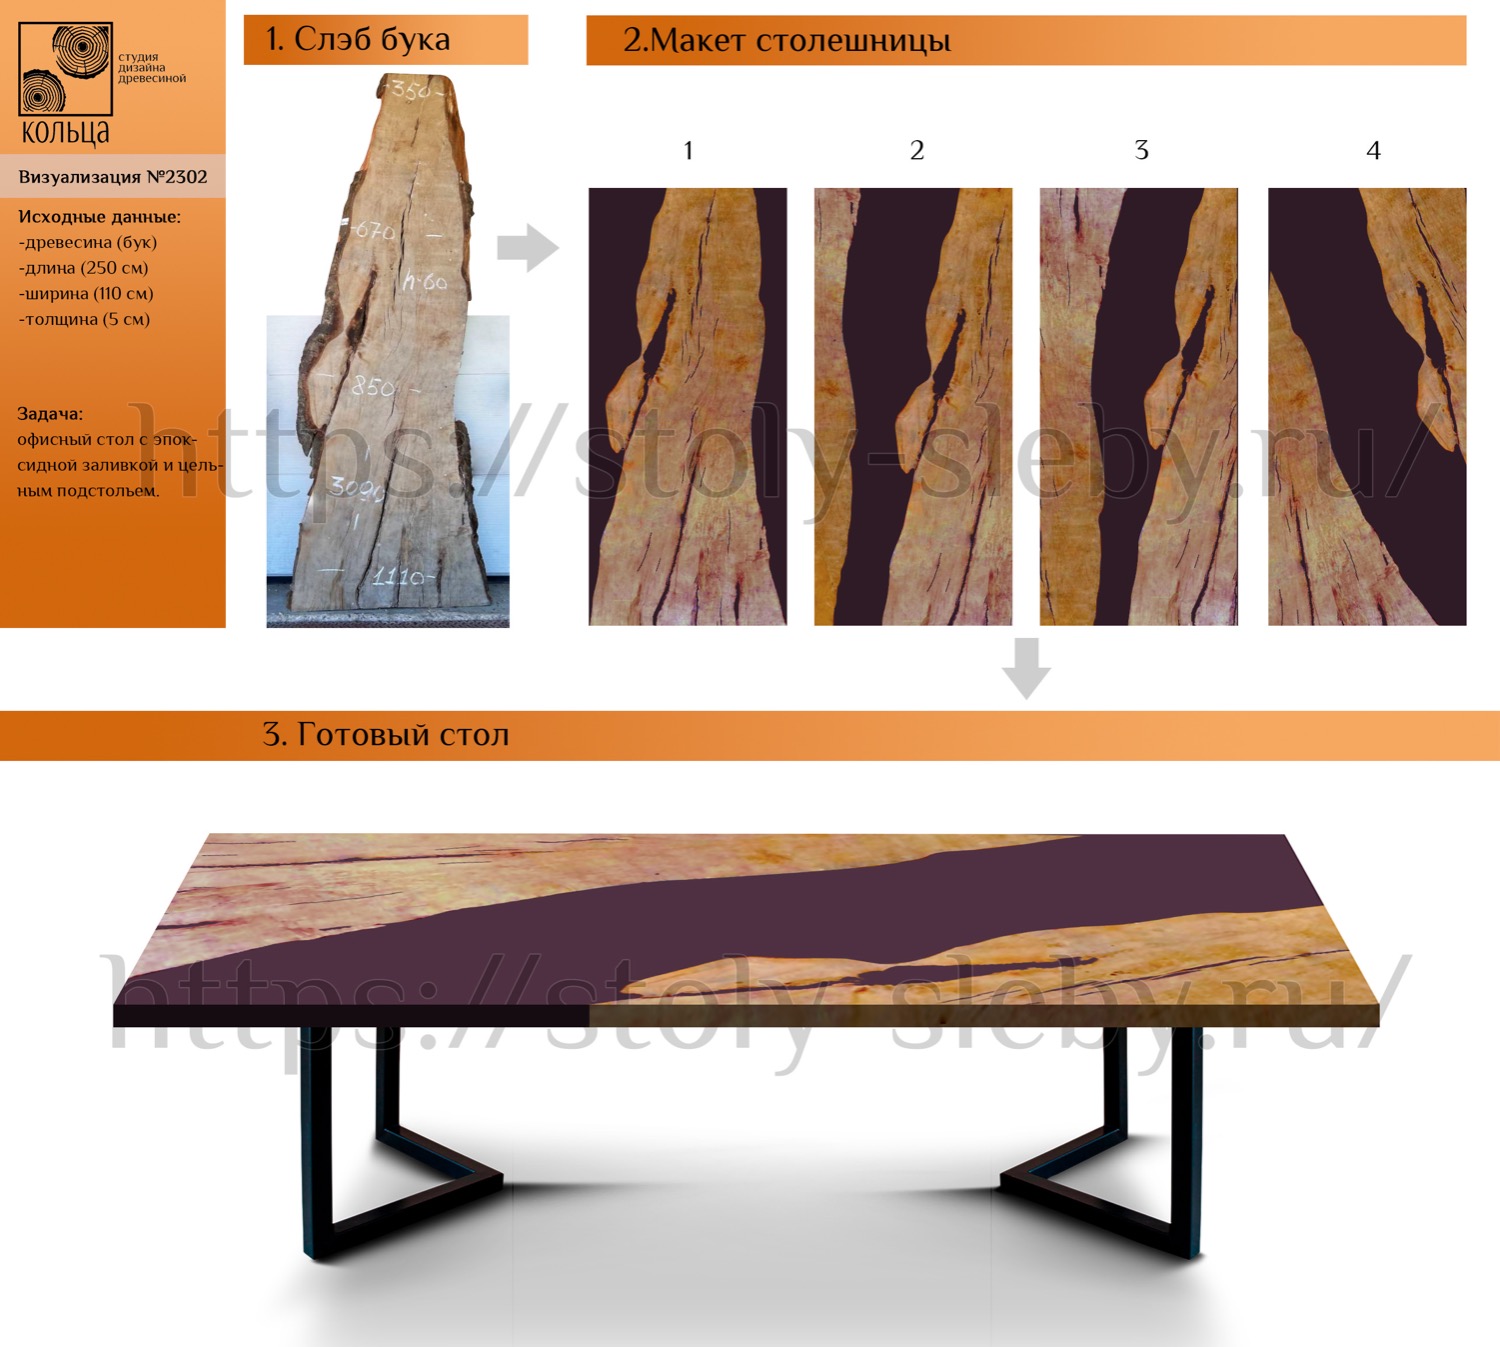 Инфографика: этапы разработки офисного стола из слэба бука - от студии Кольца